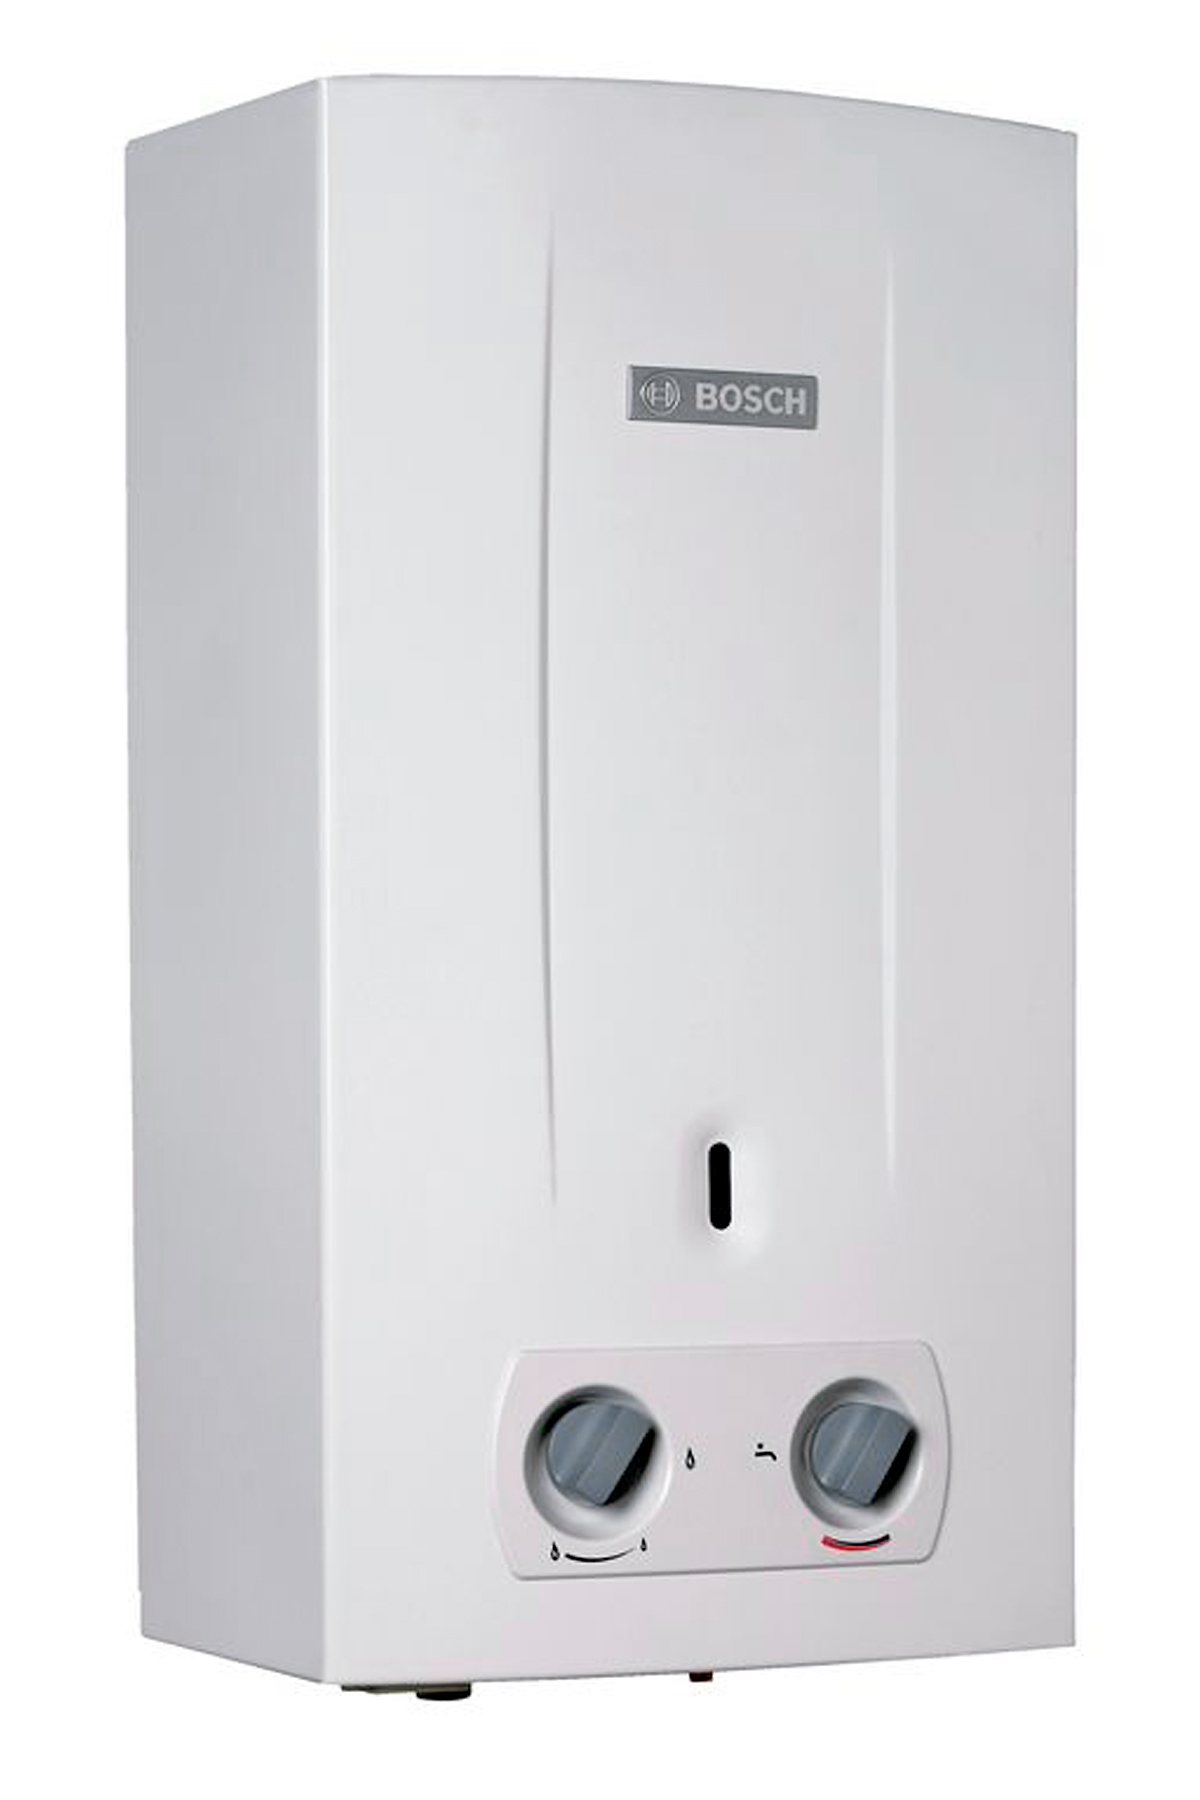 Відгуки газова колонка Bosch Therm 2000 O W 10 KB (7736500992)